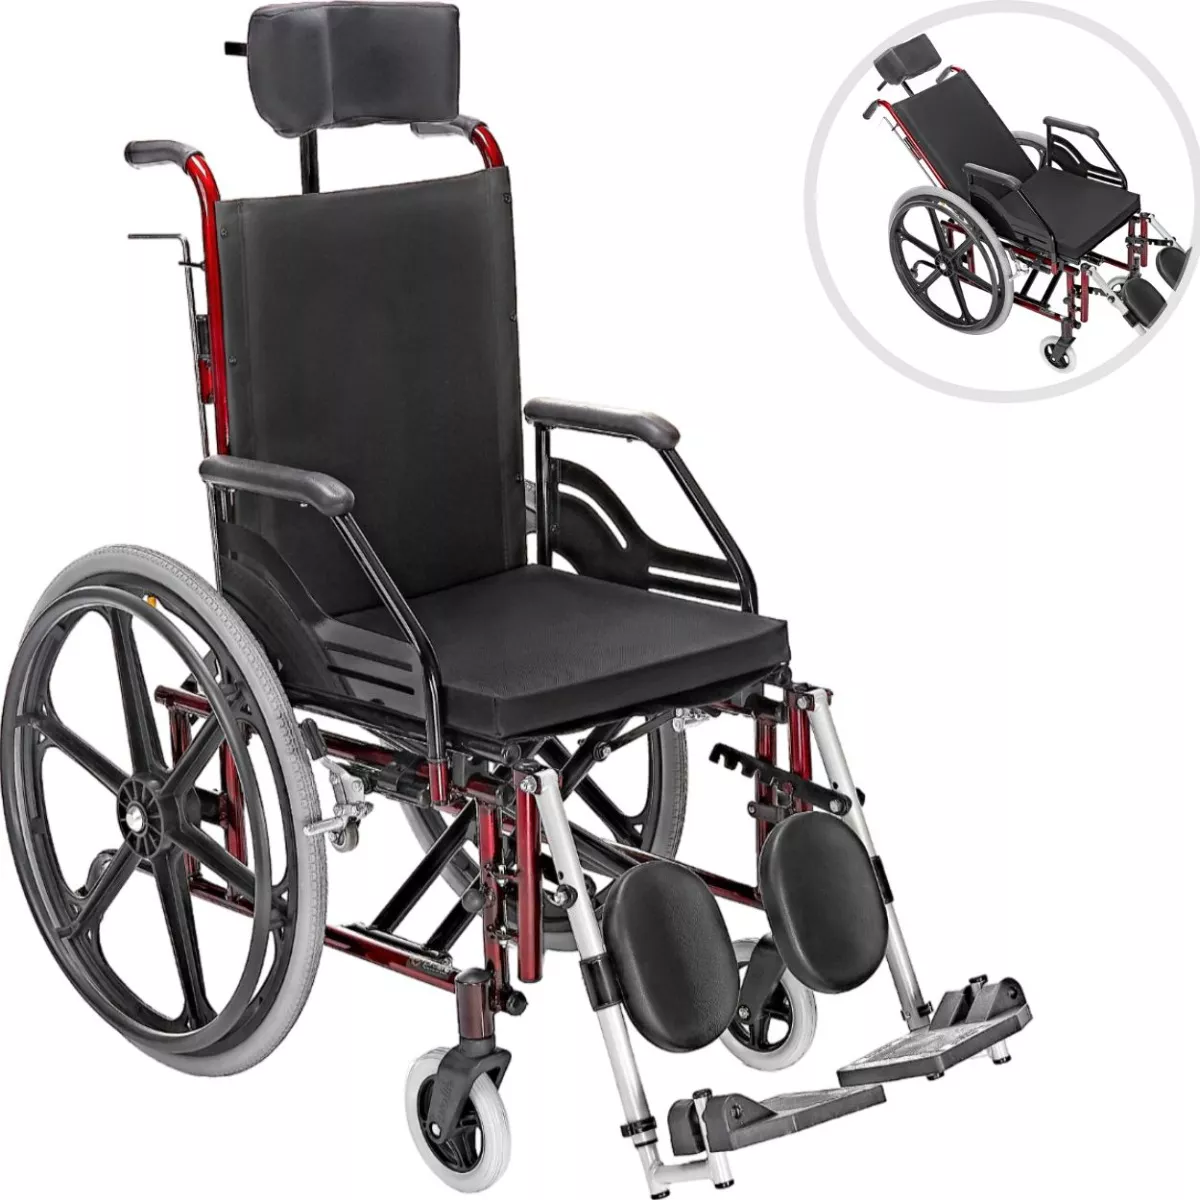 Primeira imagem para pesquisa de aluguel de cadeira de rodas praia